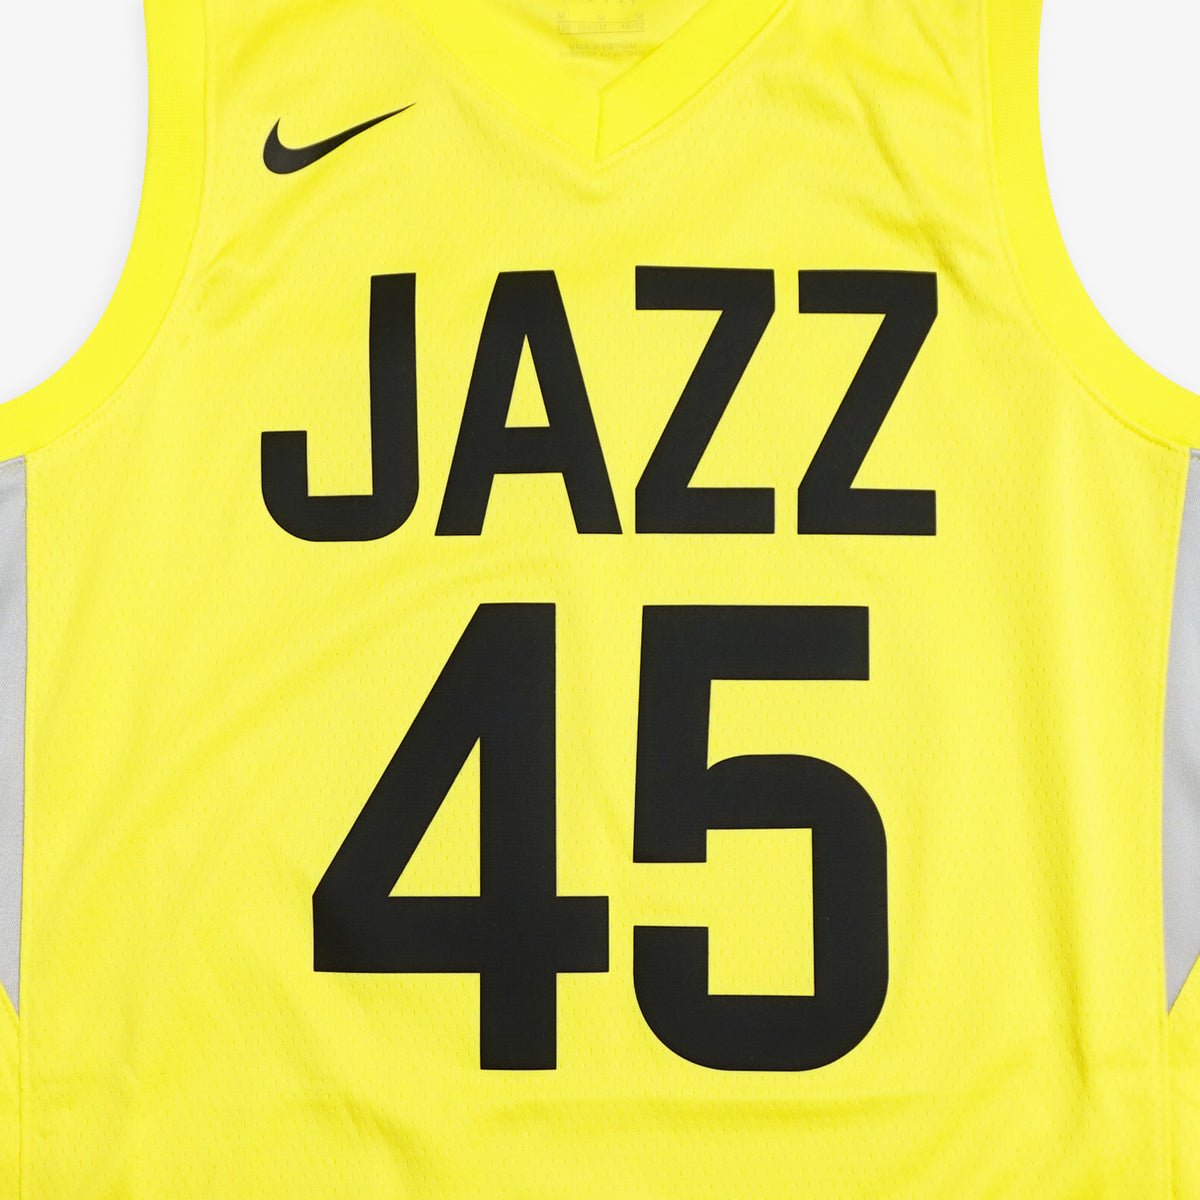 Nike, Shirts, Nike Utah Jazz Mitchell 45 Jersey Size Small